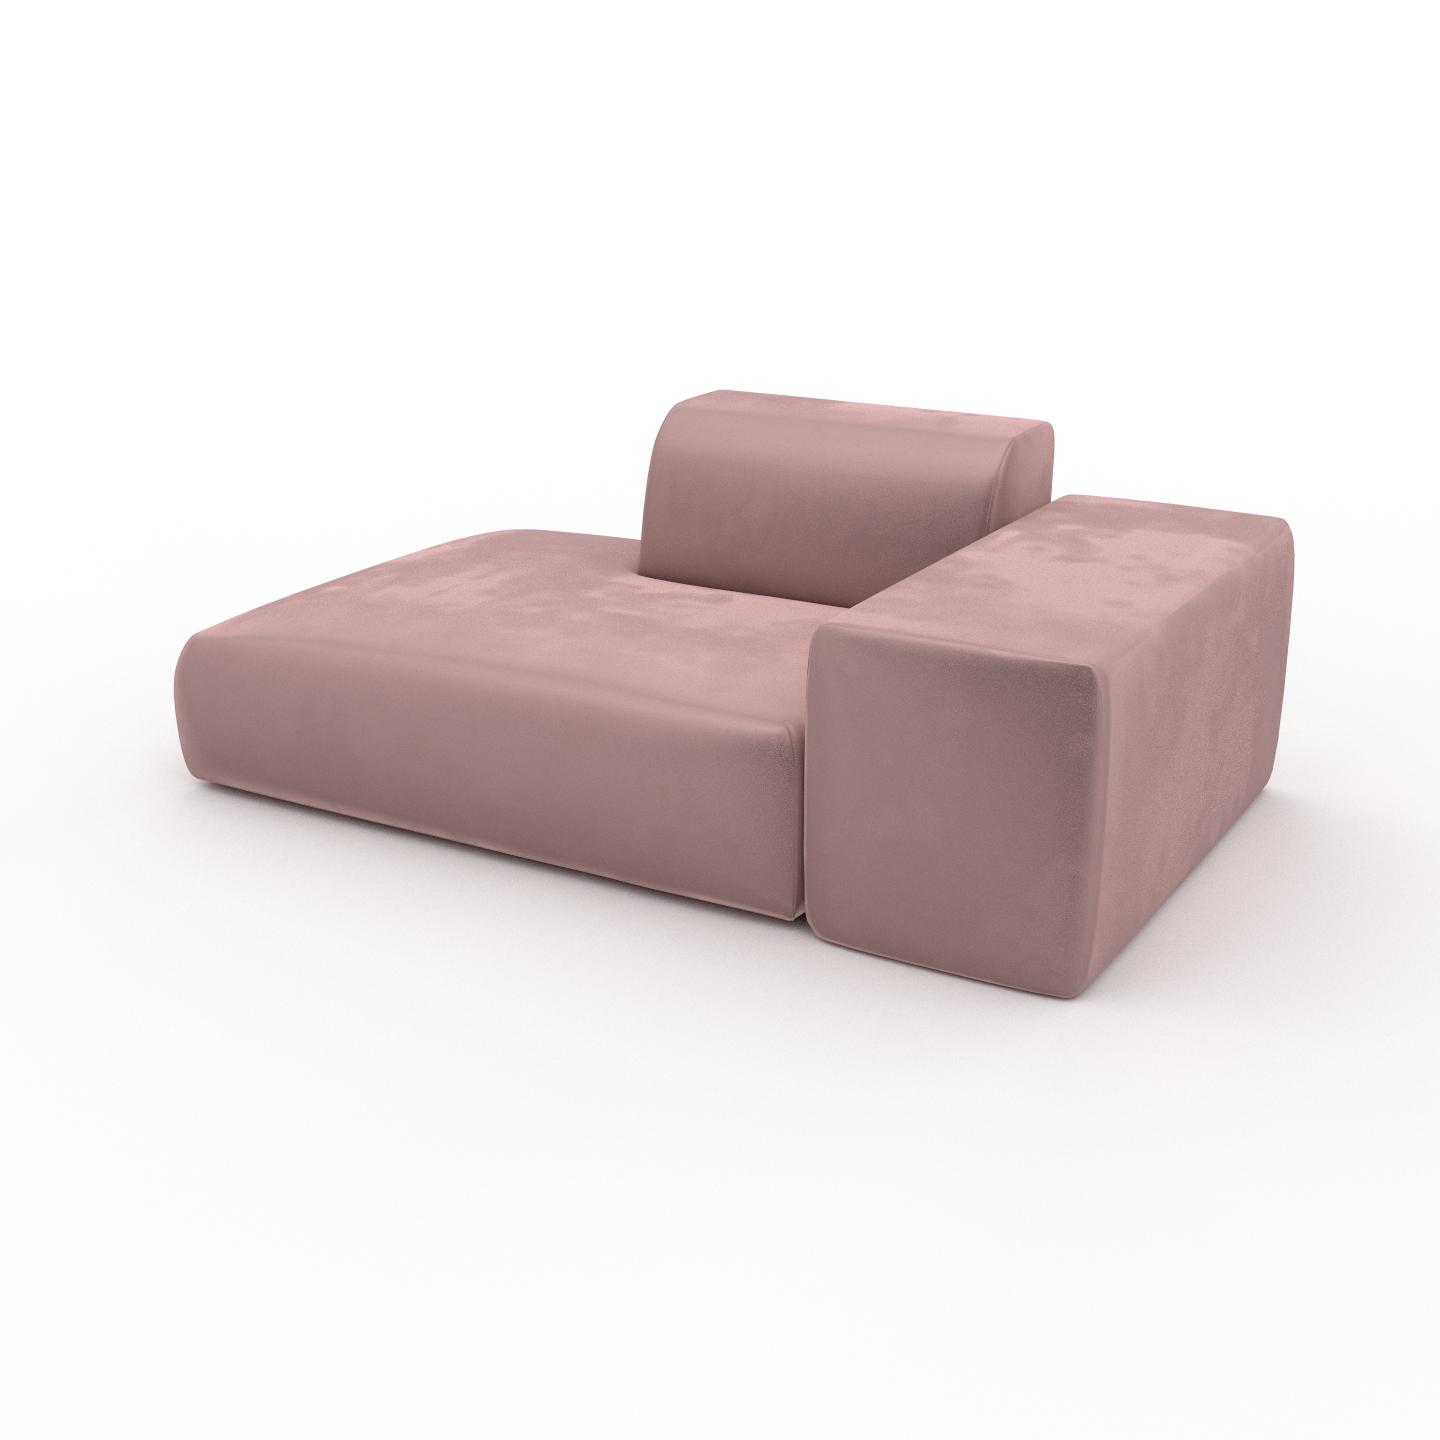 MYCS Sofa Samt Bonbonrosa - Moderne Designer-Couch: Hochwertige Qualität, einzigartiges Design - 182 x 72 x 107 cm, Komplett anpassbar